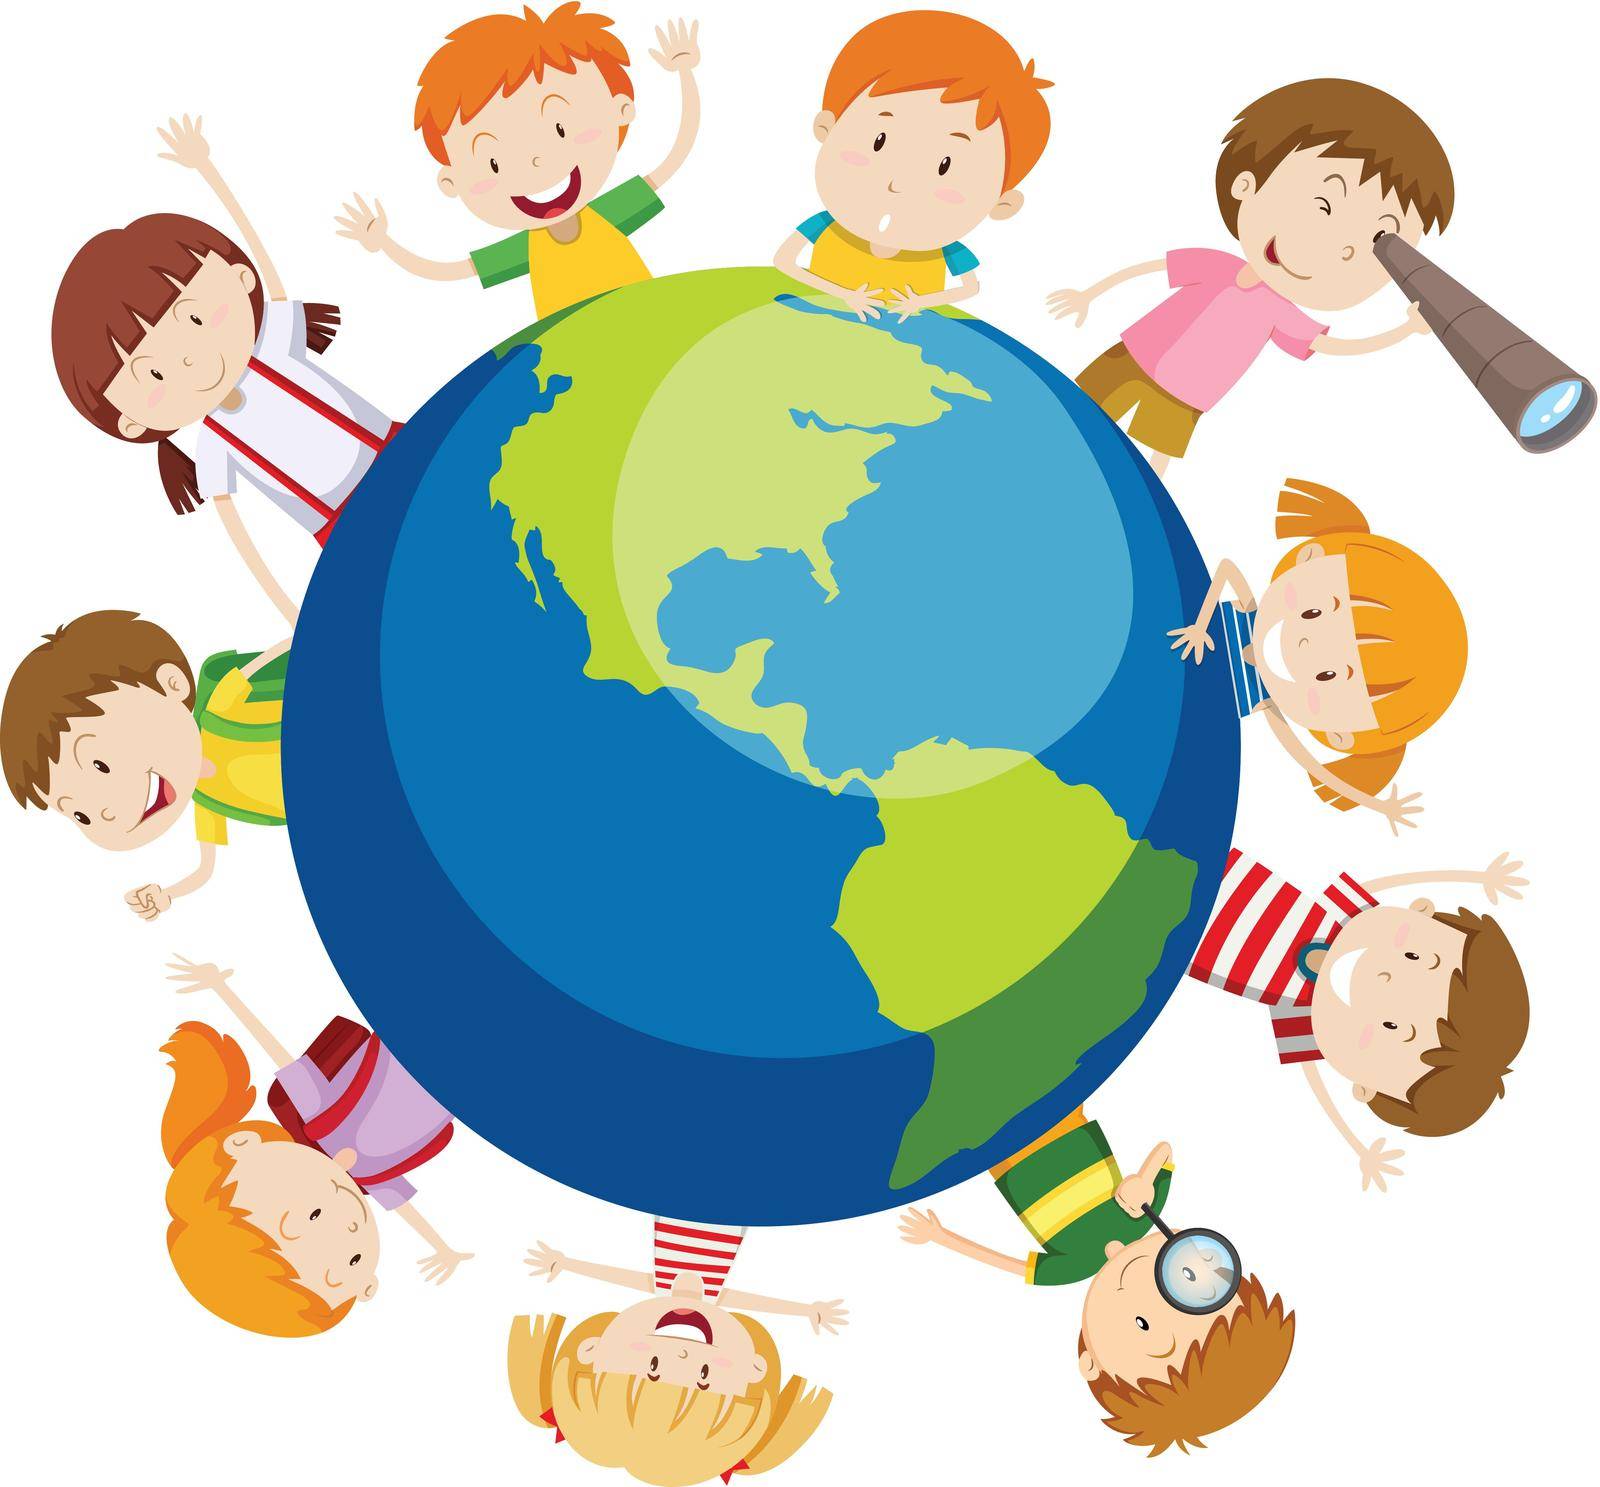 Children over the globe illustration